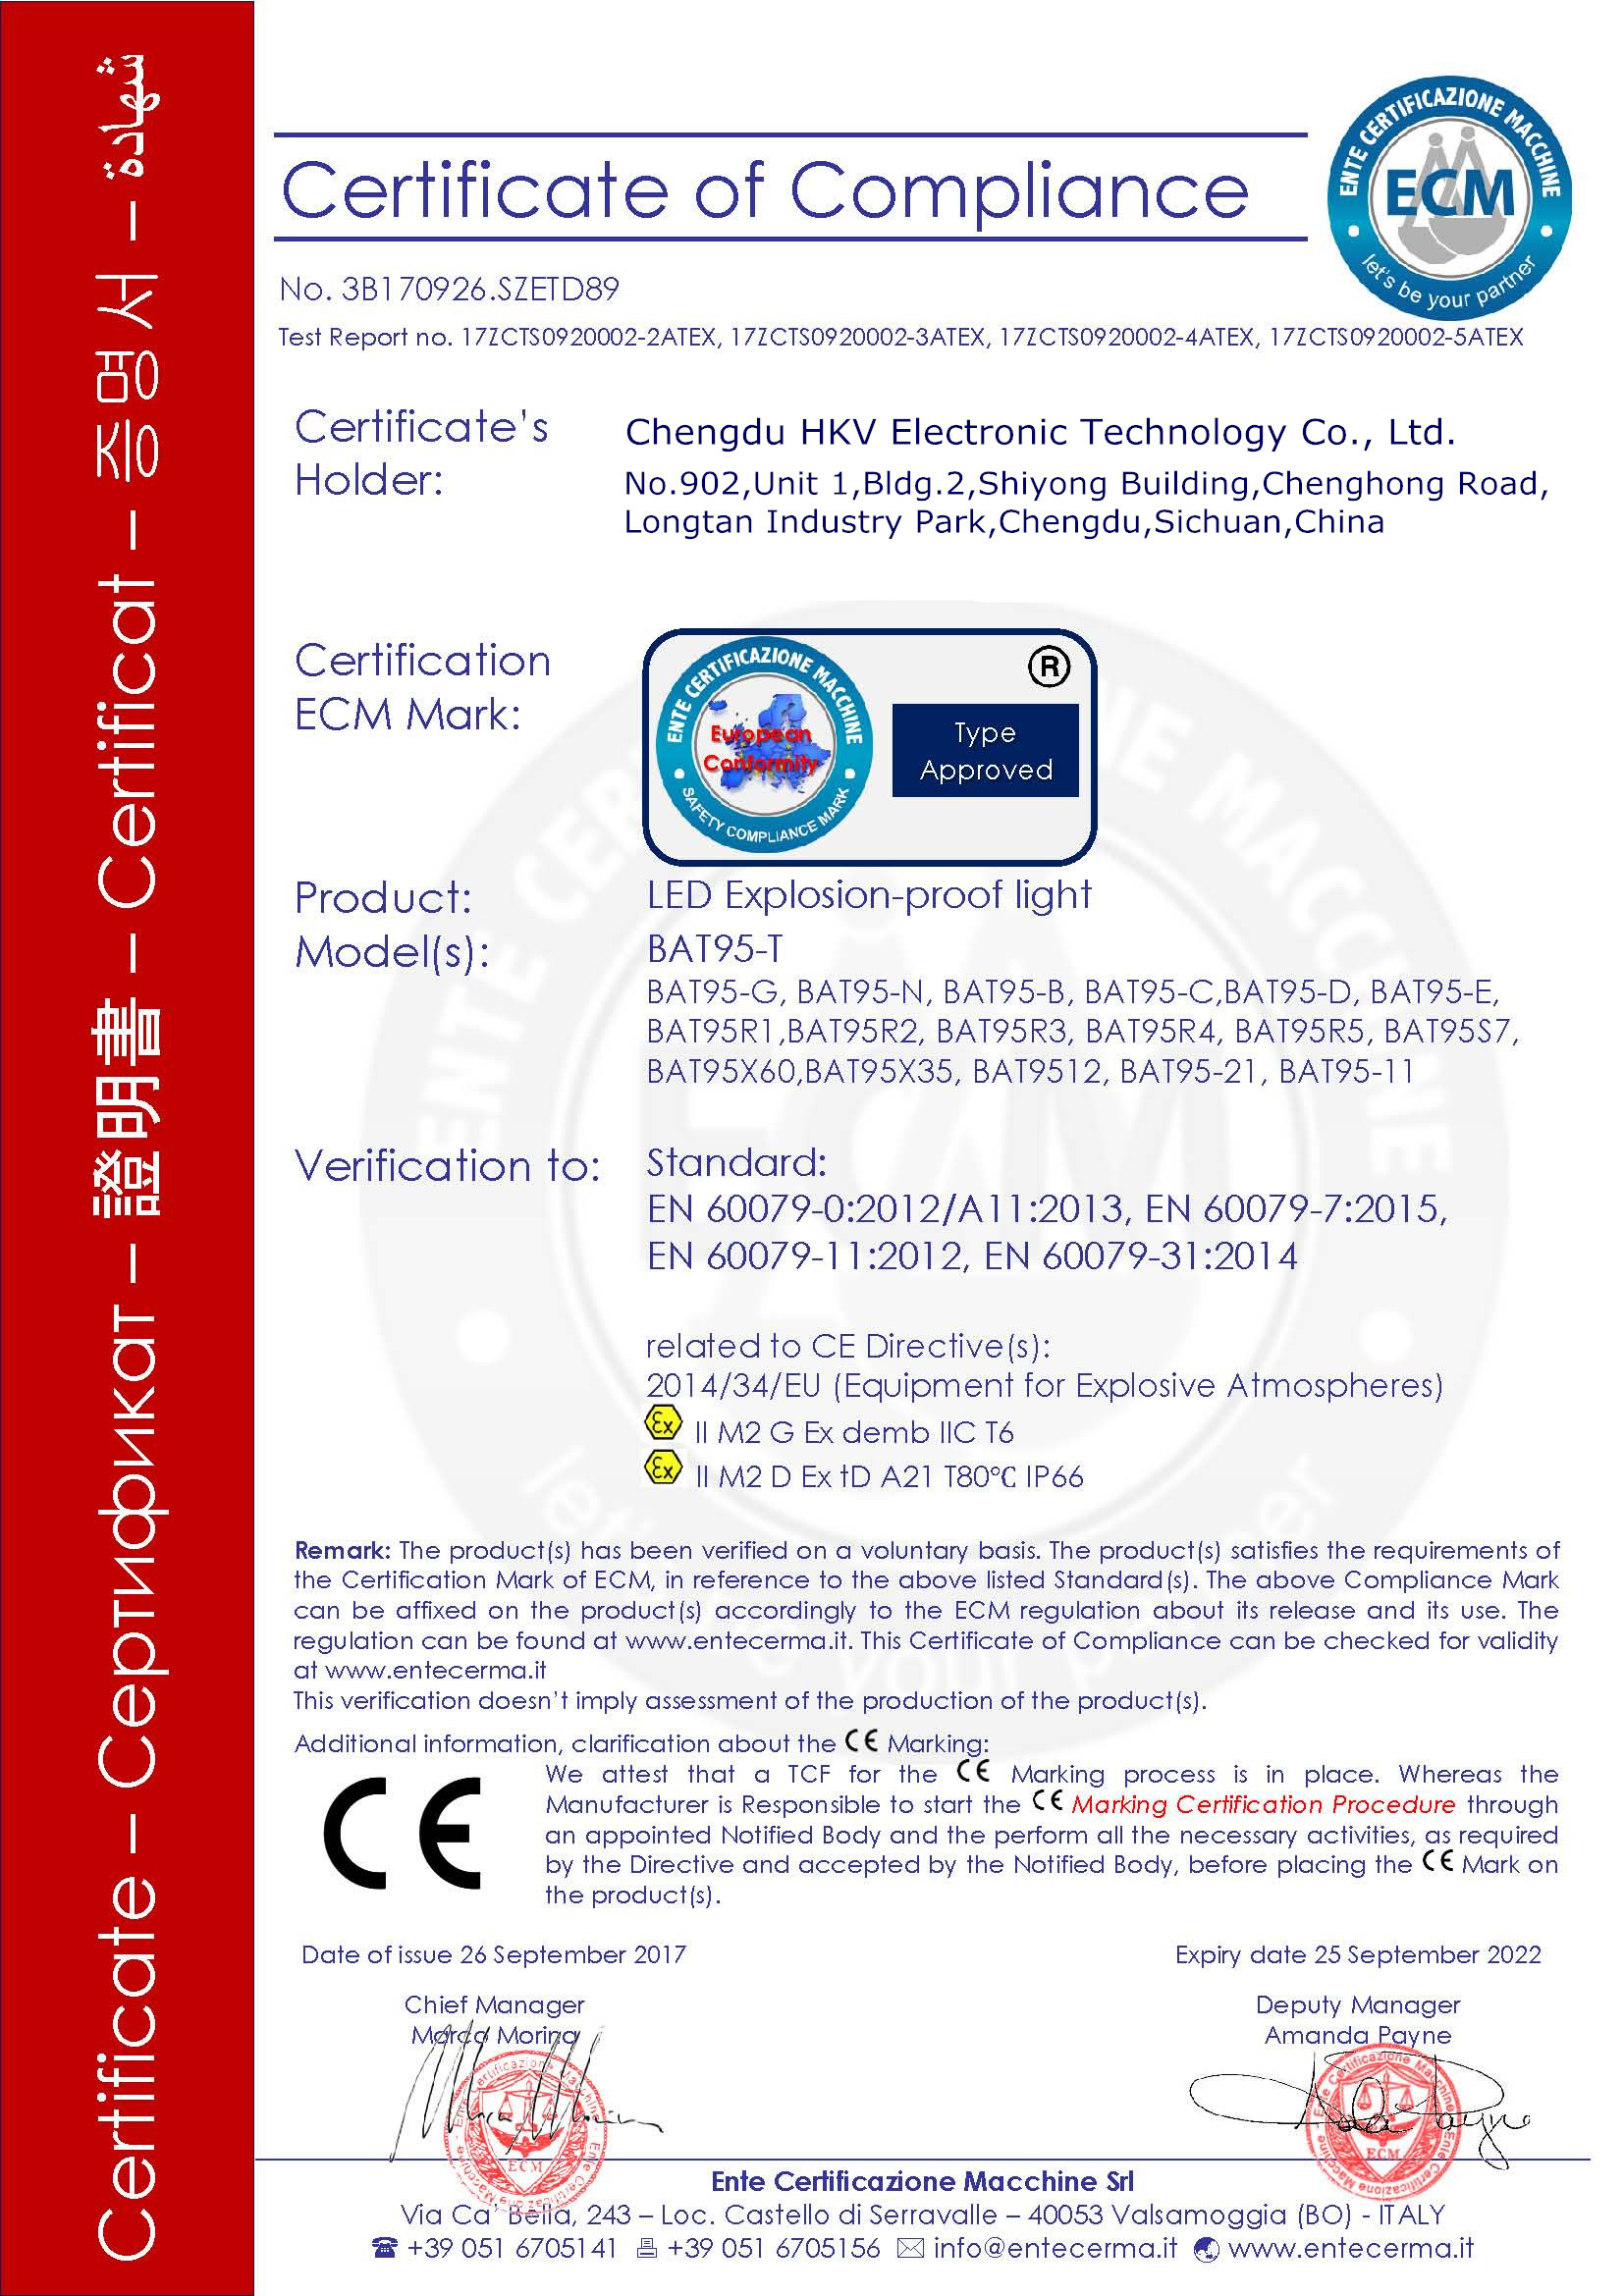 ประเทศจีน Chengdu HKV Electronic Technology Co., Ltd. รับรอง